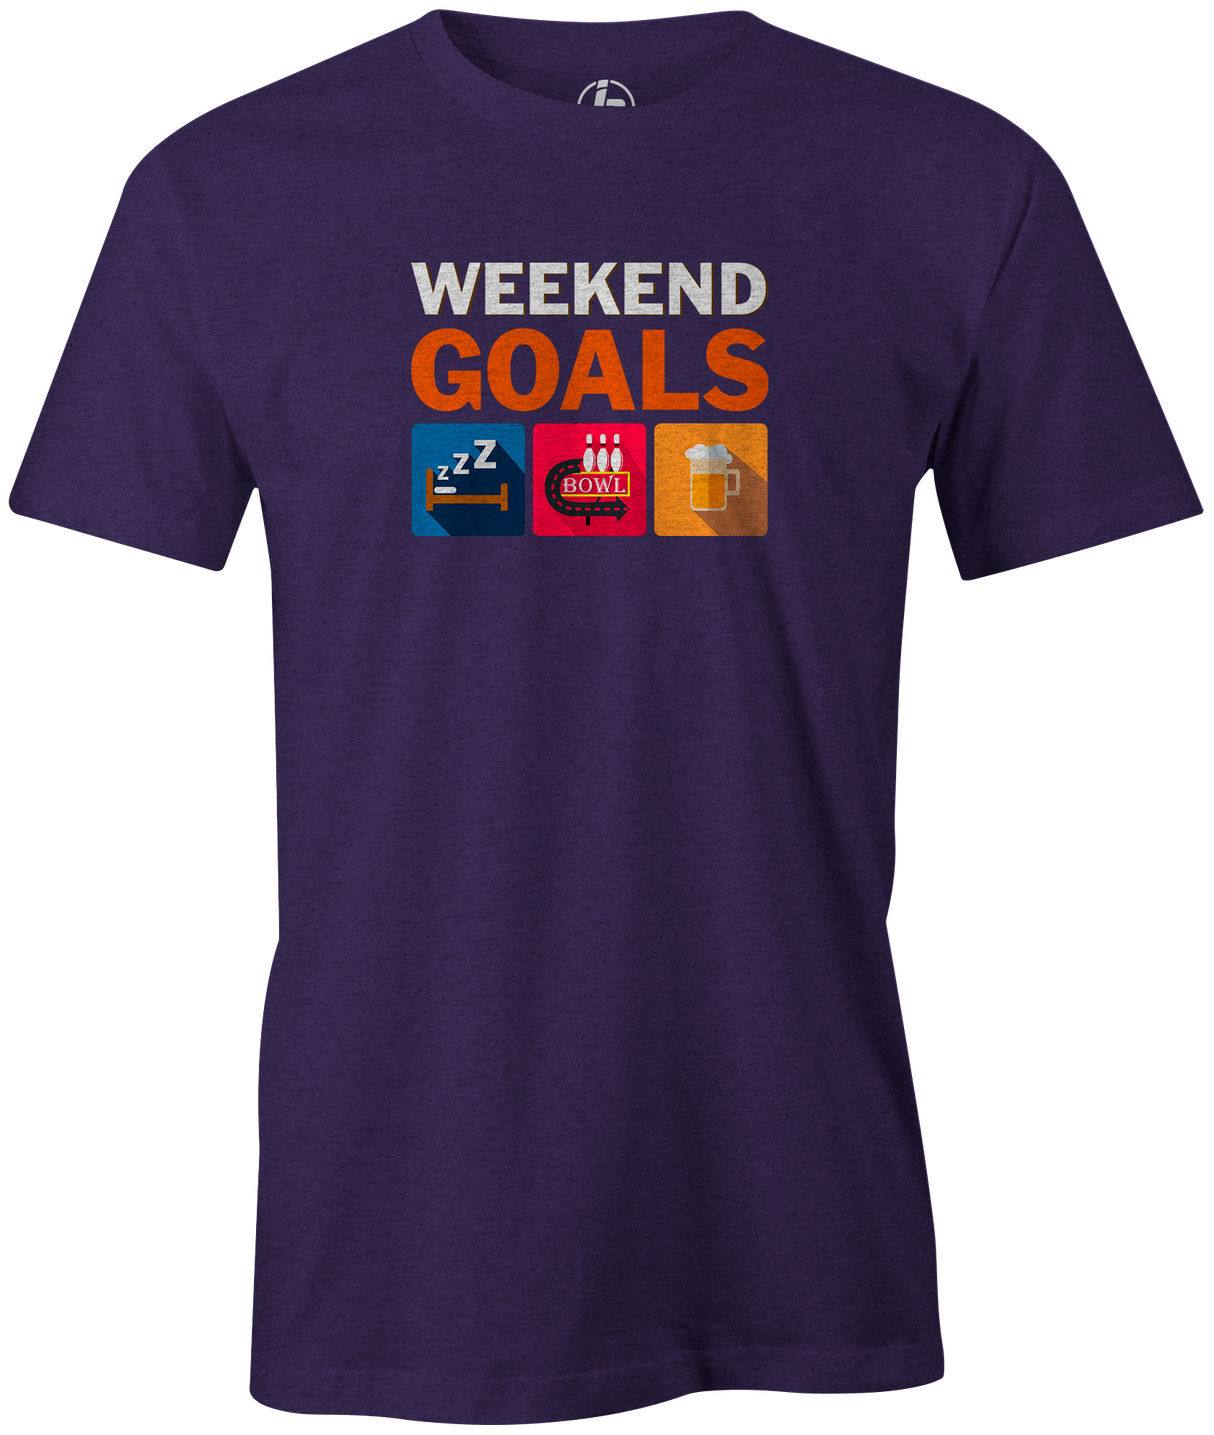 Weekend Goals Men's T-shirt, Purple, Bowling, tshirt, tee, tee-shirt, tee shirt